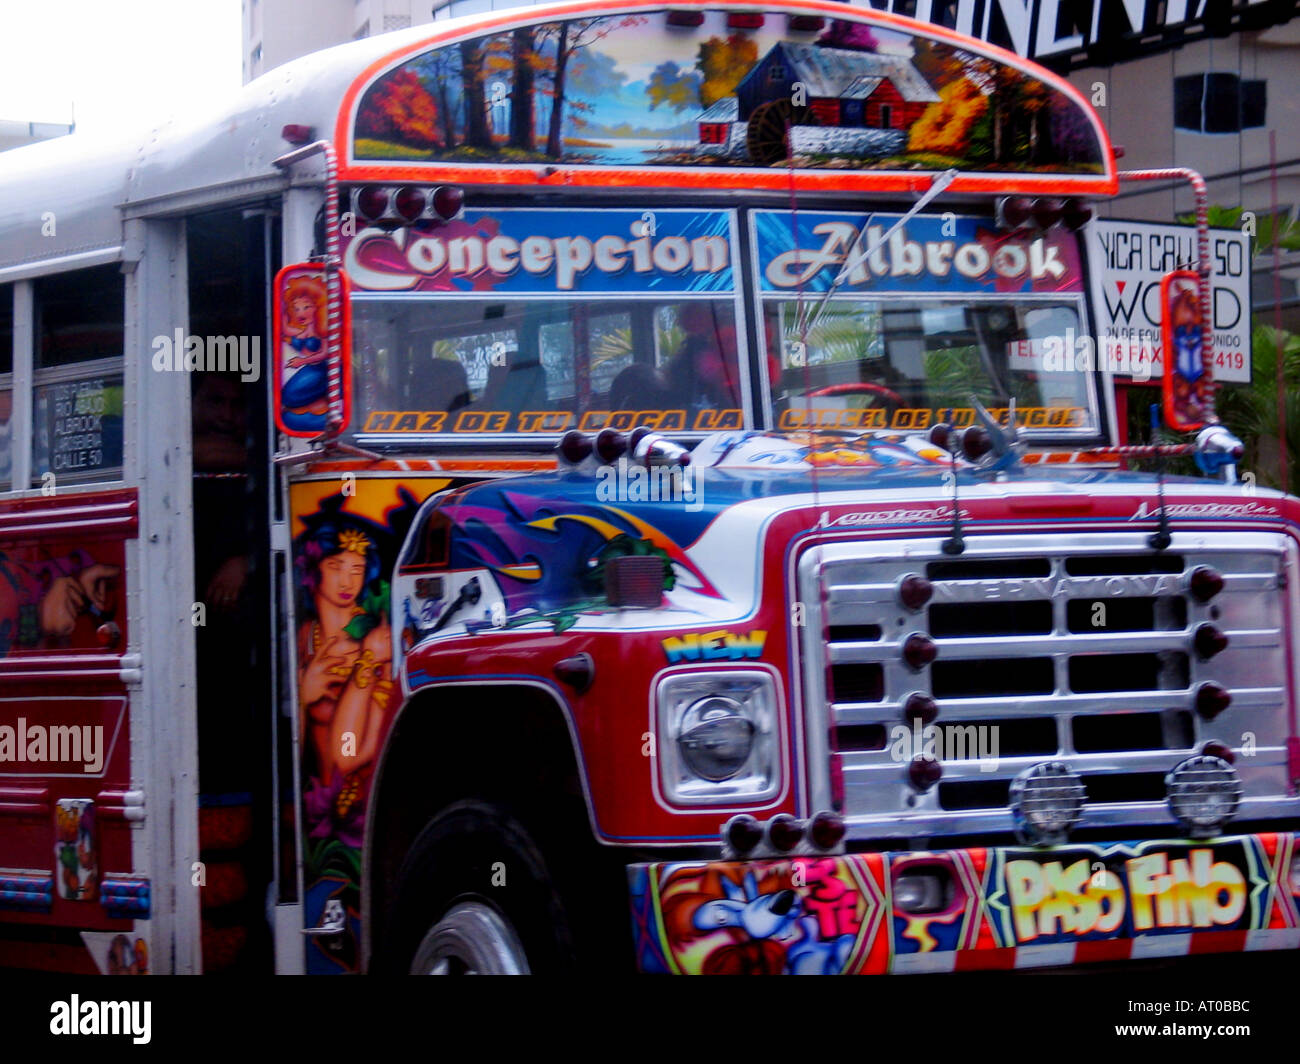 Diablo Rojo bus panaméens sont connus localement sous le nom de Diables Rouges en raison de la vitesse à laquelle ils conduisent Banque D'Images